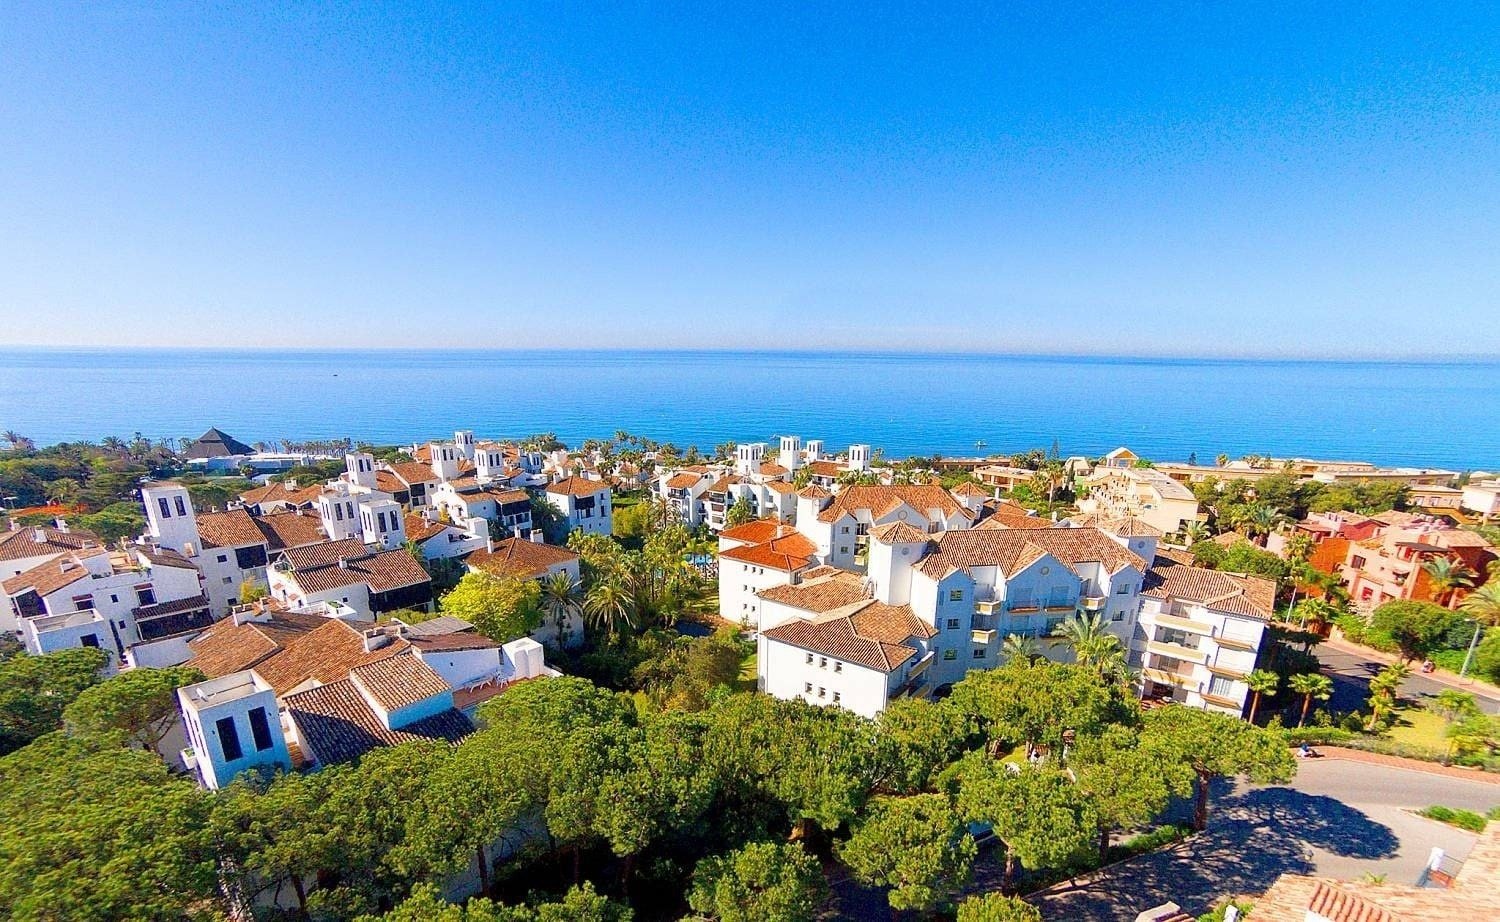 Vista aerea de los alrededores y del Hotel Ona Alanda Club Marbella